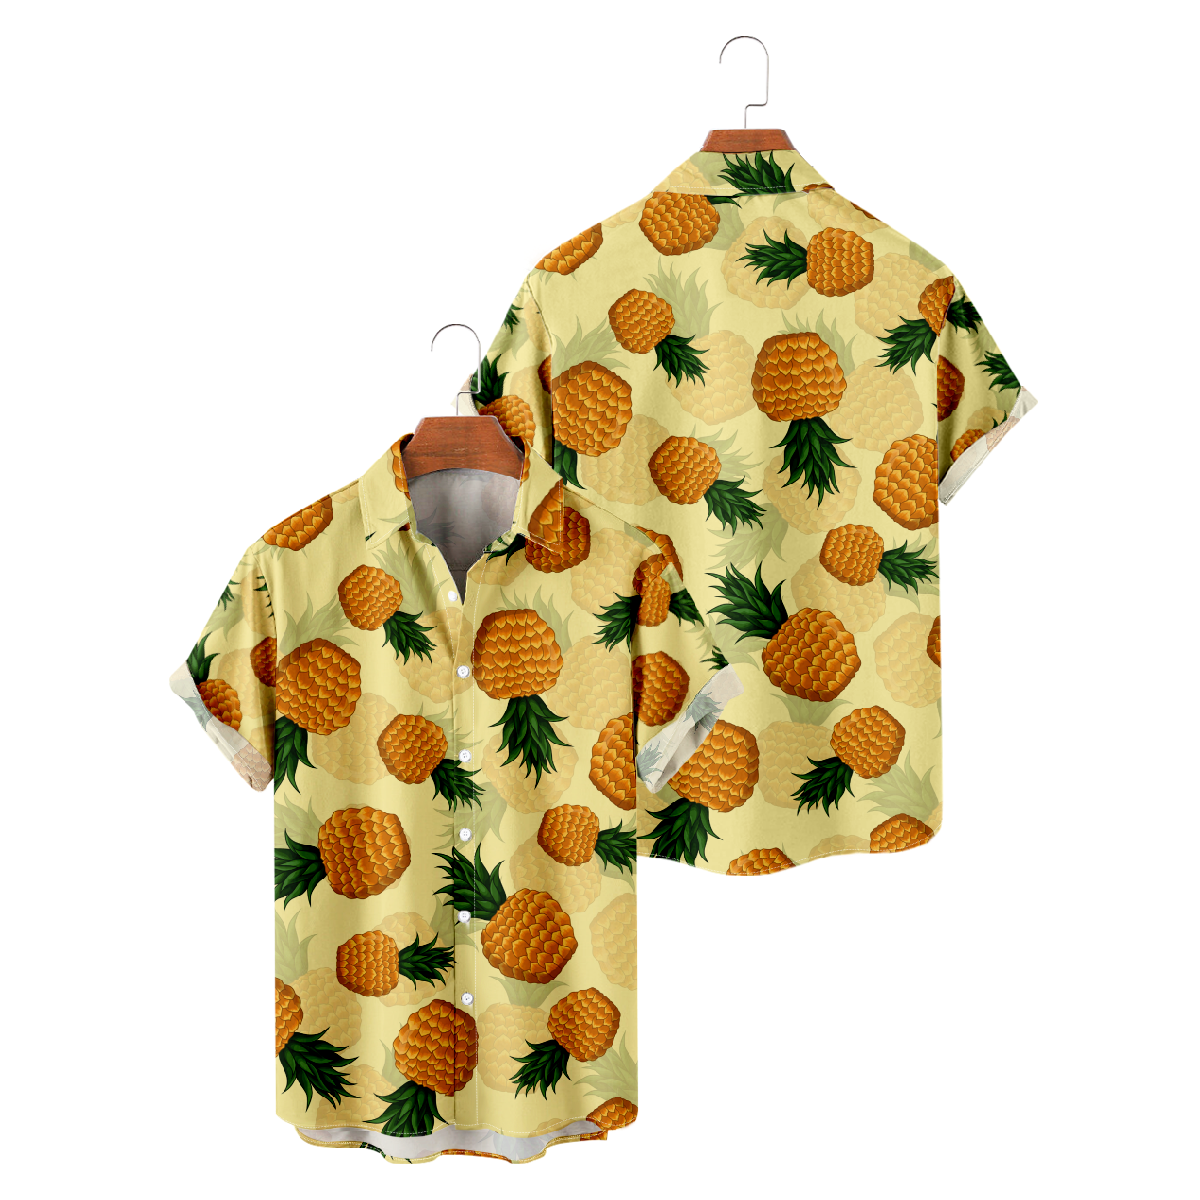 Men's Pineapple Print Hawaiian Shirt Short Sleeve Button Up Straight Collar Summer Shirt